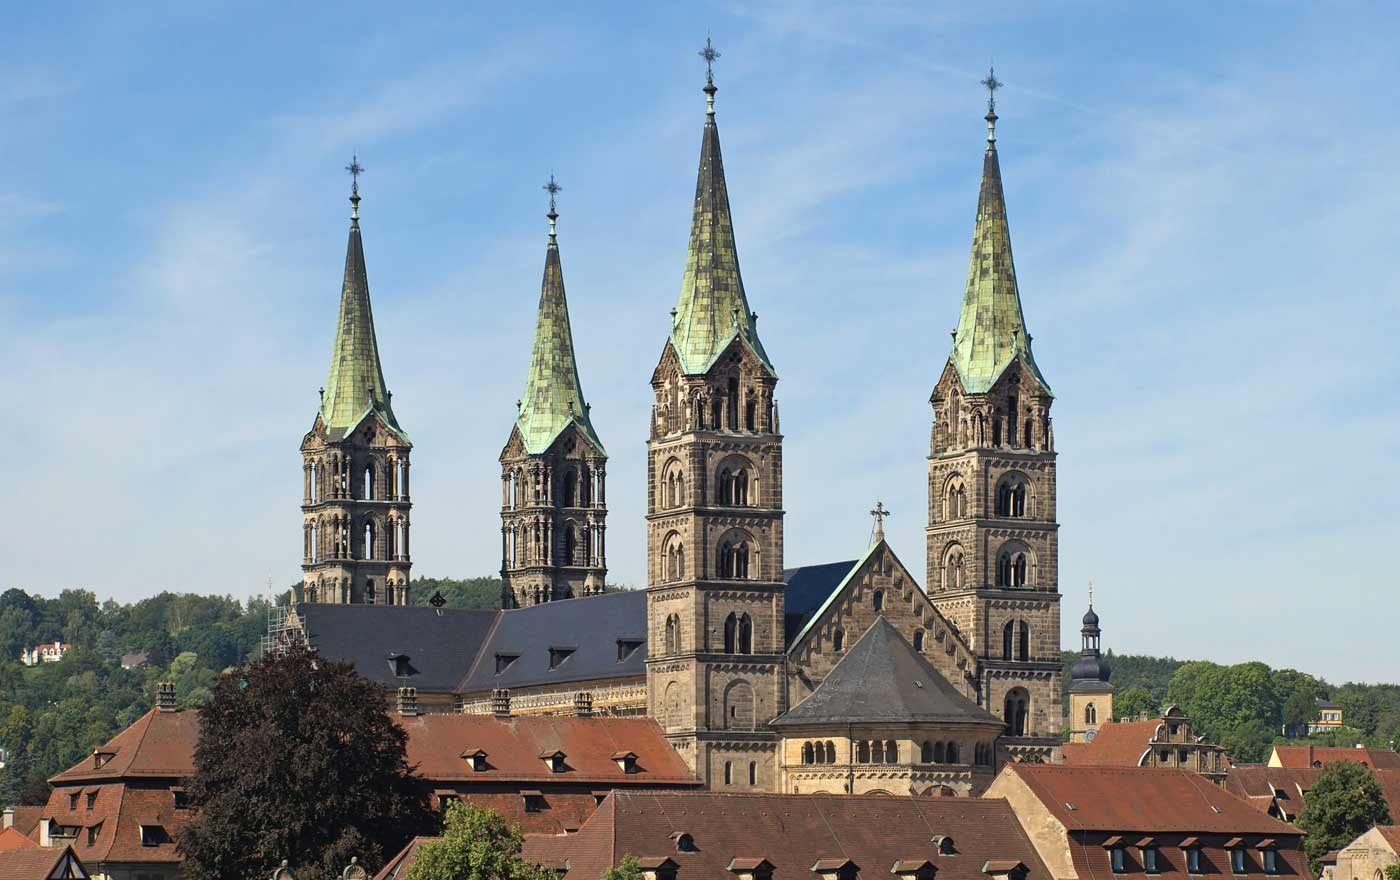 Nach Klagenfurt und Wien ist das Fastentuch von Lisa Huber nun im Dom von Bamberg zu sehen. Foto: wikimedia/nawi112/cc by sa 3.0